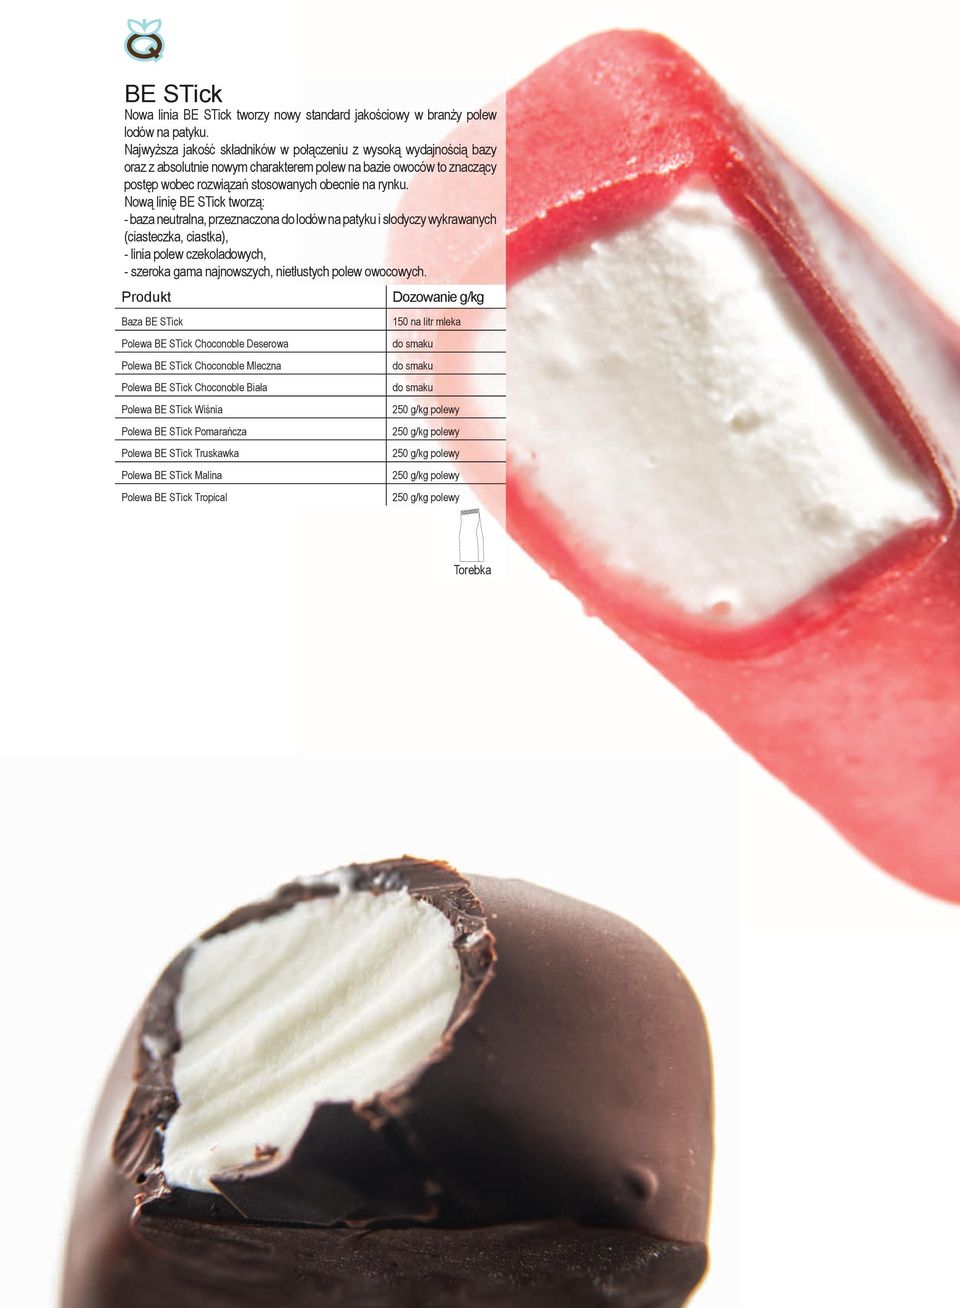 Nową linię BE STick tworzą: - baza neutralna, przeznaczona do lodów na patyku i słodyczy wykrawanych (ciasteczka, ciastka), - linia polew czekoladowych, - szeroka gama najnowszych, nietłustych polew